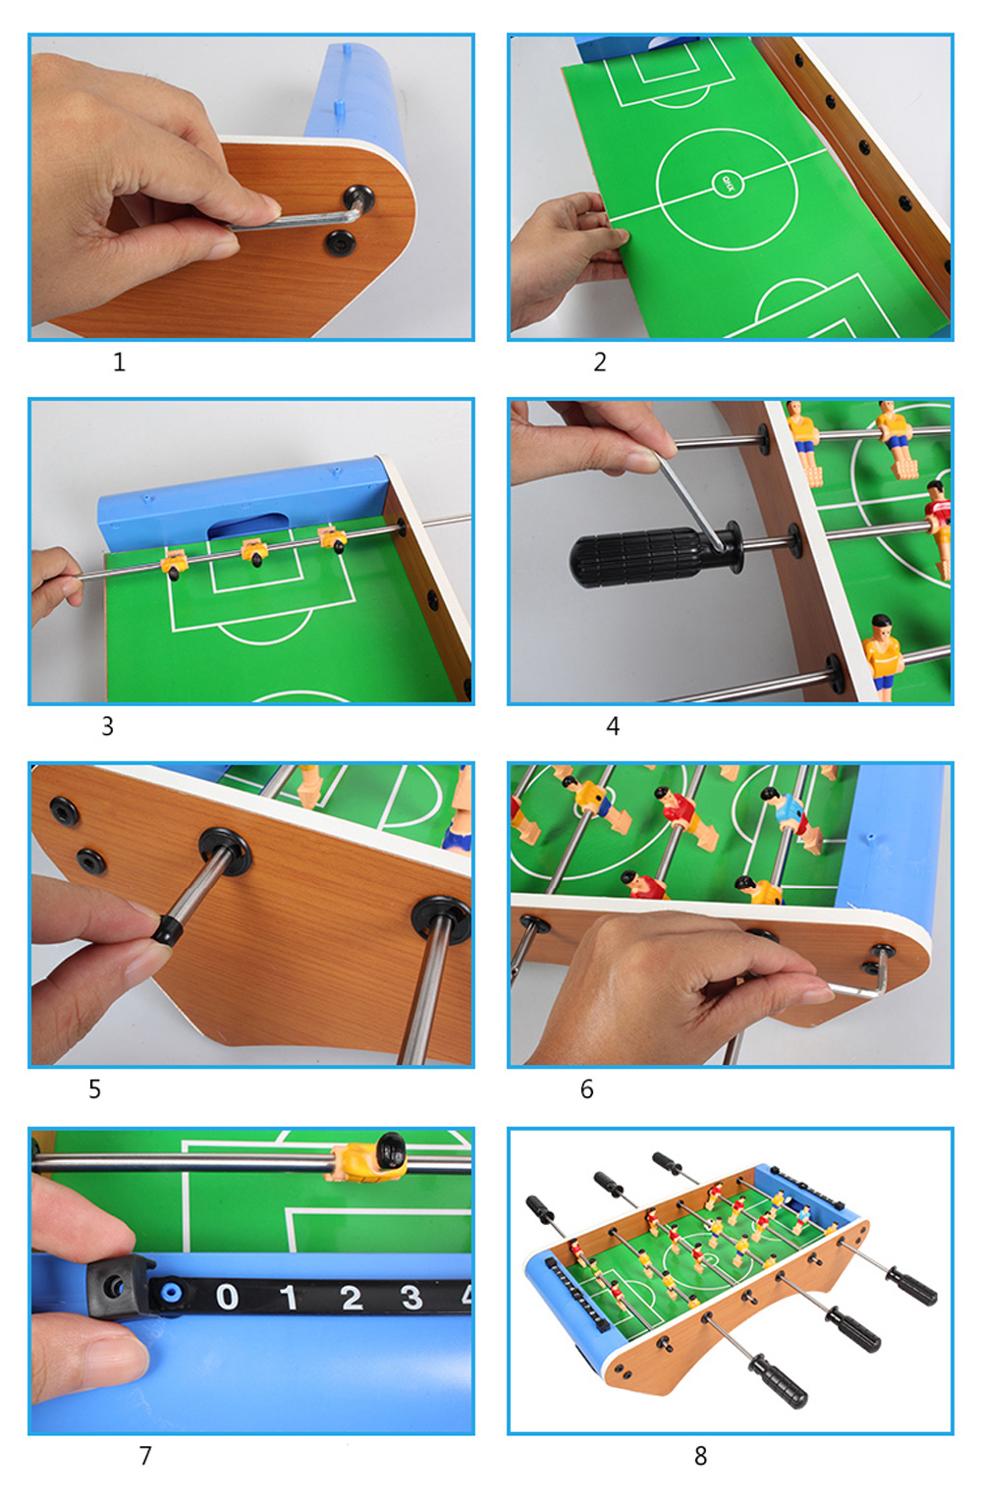 Machine de Football de Table 6 barres, jouet de Football, jouet interactif parents-enfants, divertissement en intérieur, Sport pour enfants